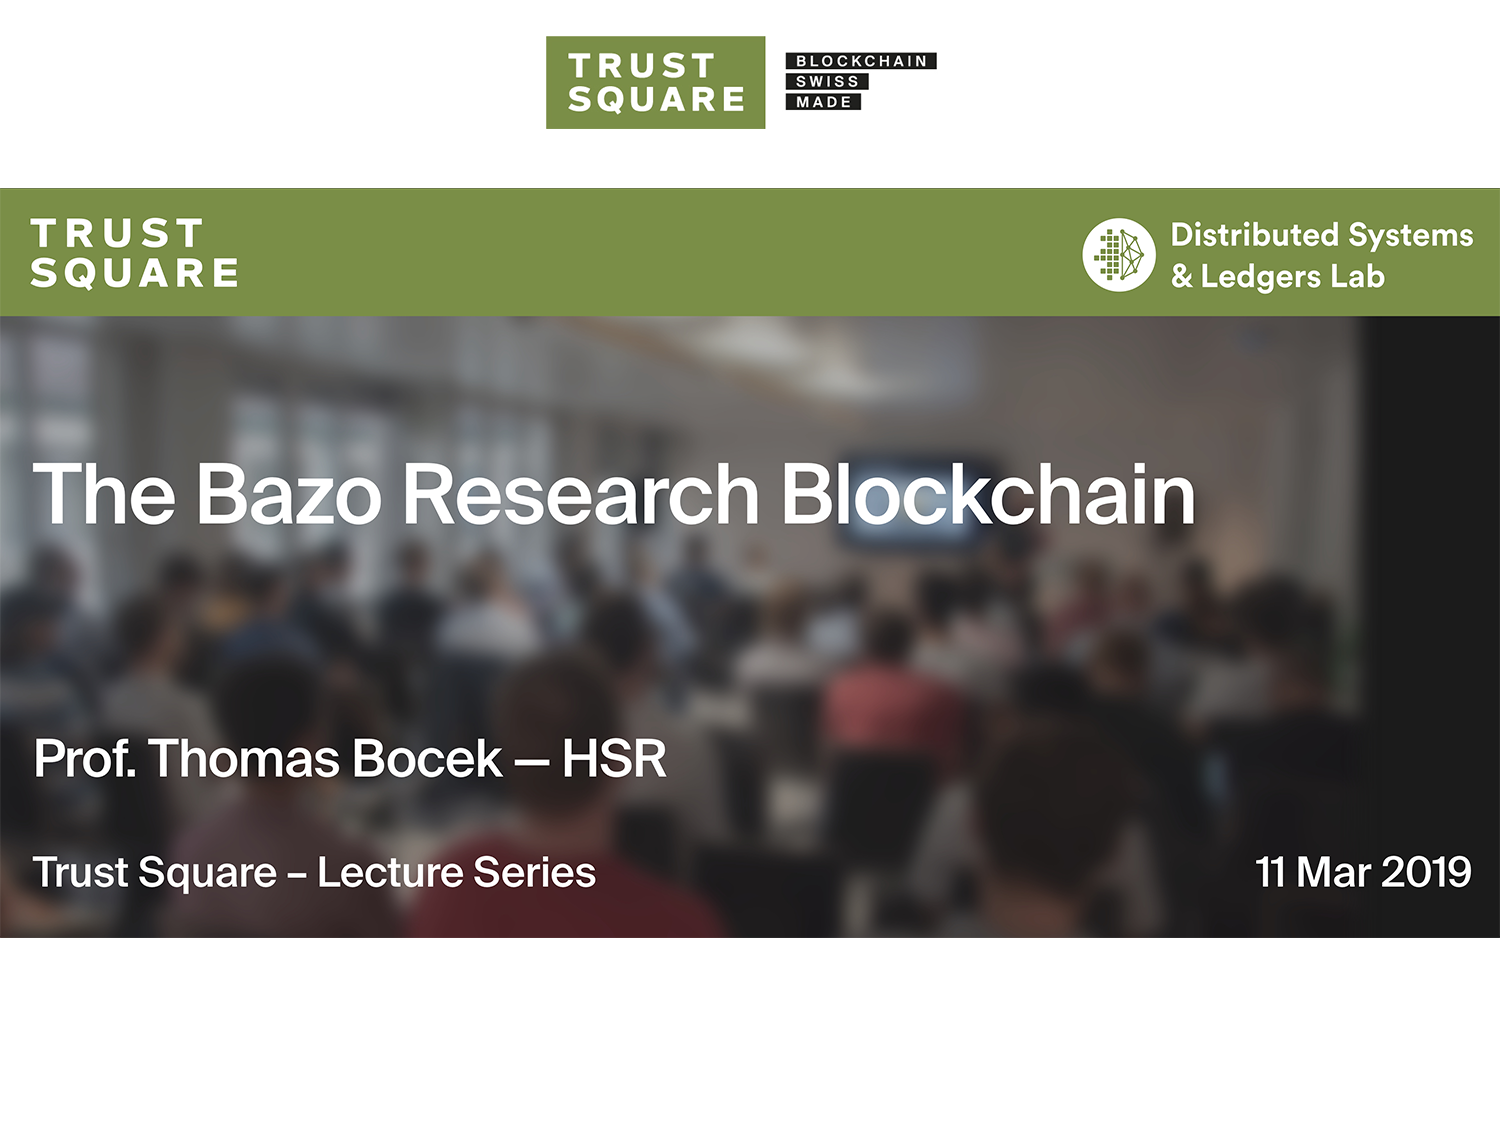 Trust Square Lecture Series - The Bazo Research Blockchain